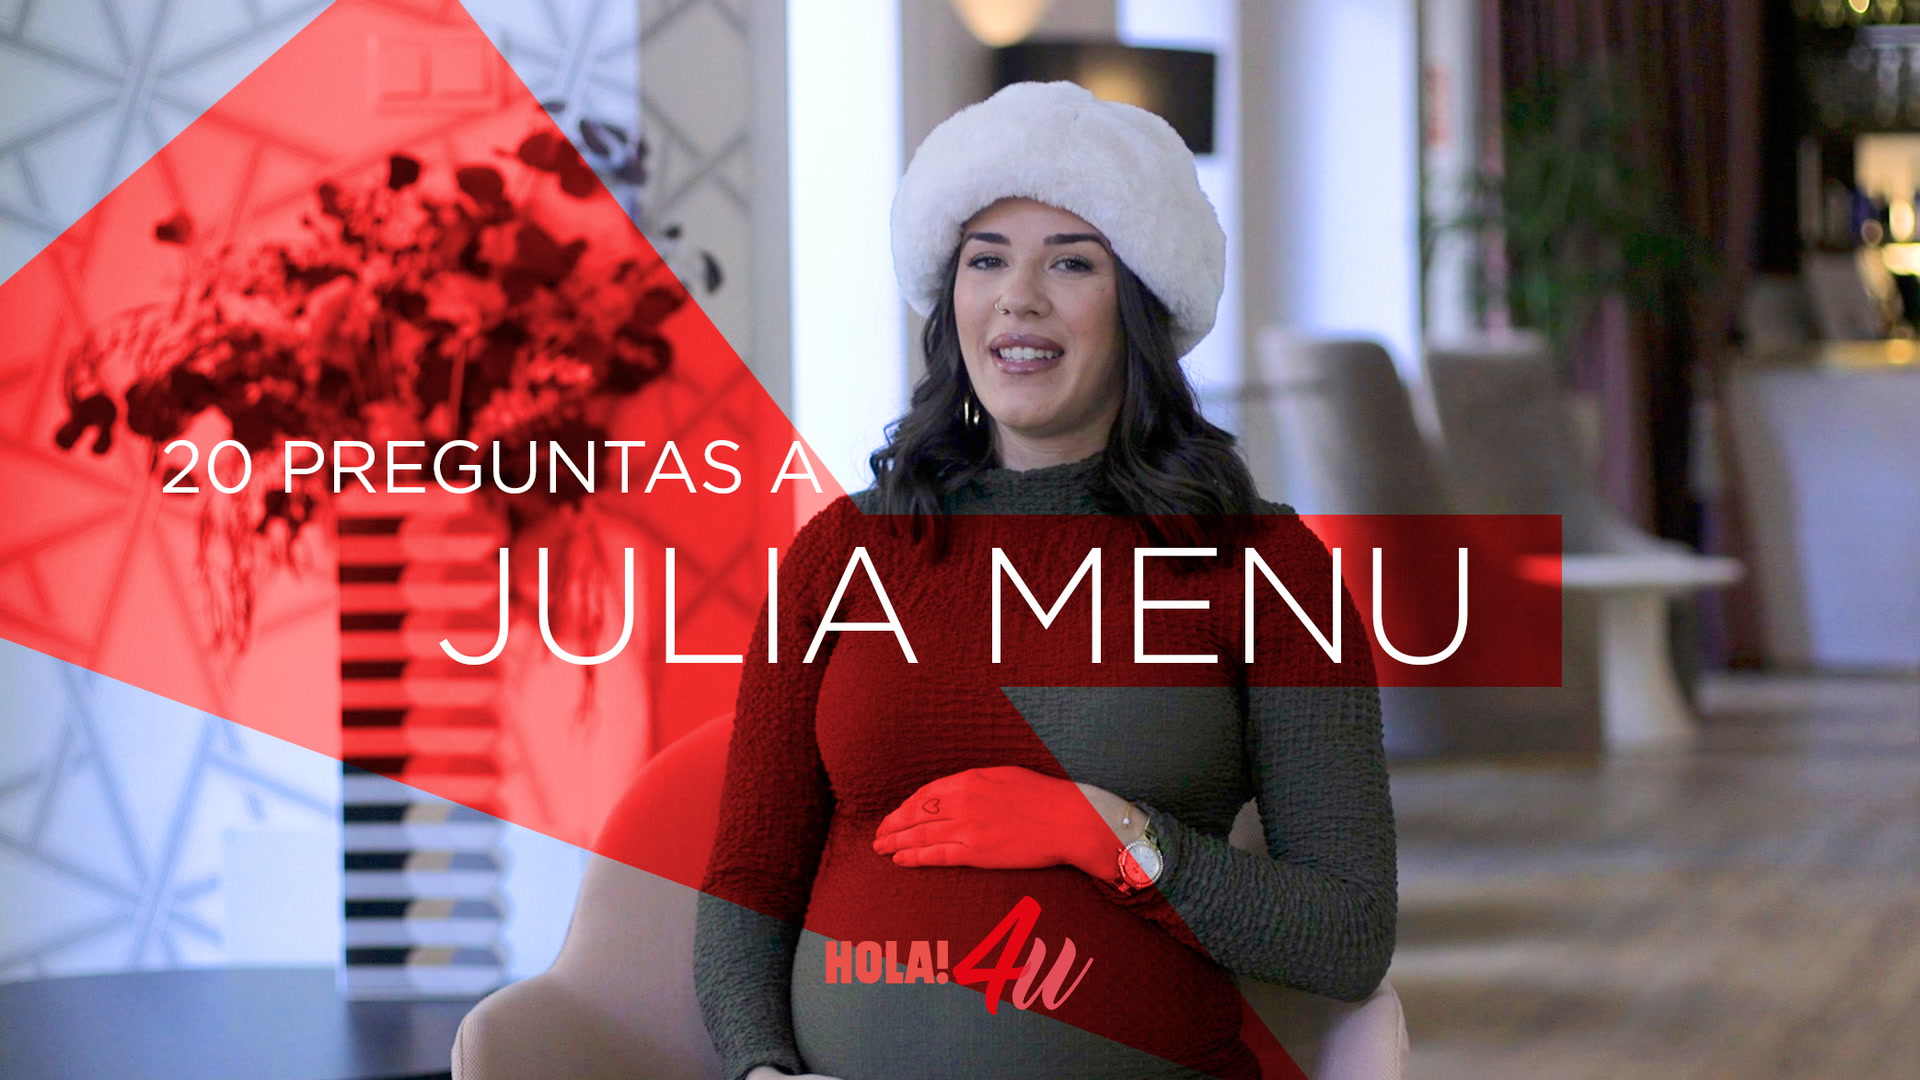 Julia Menú García